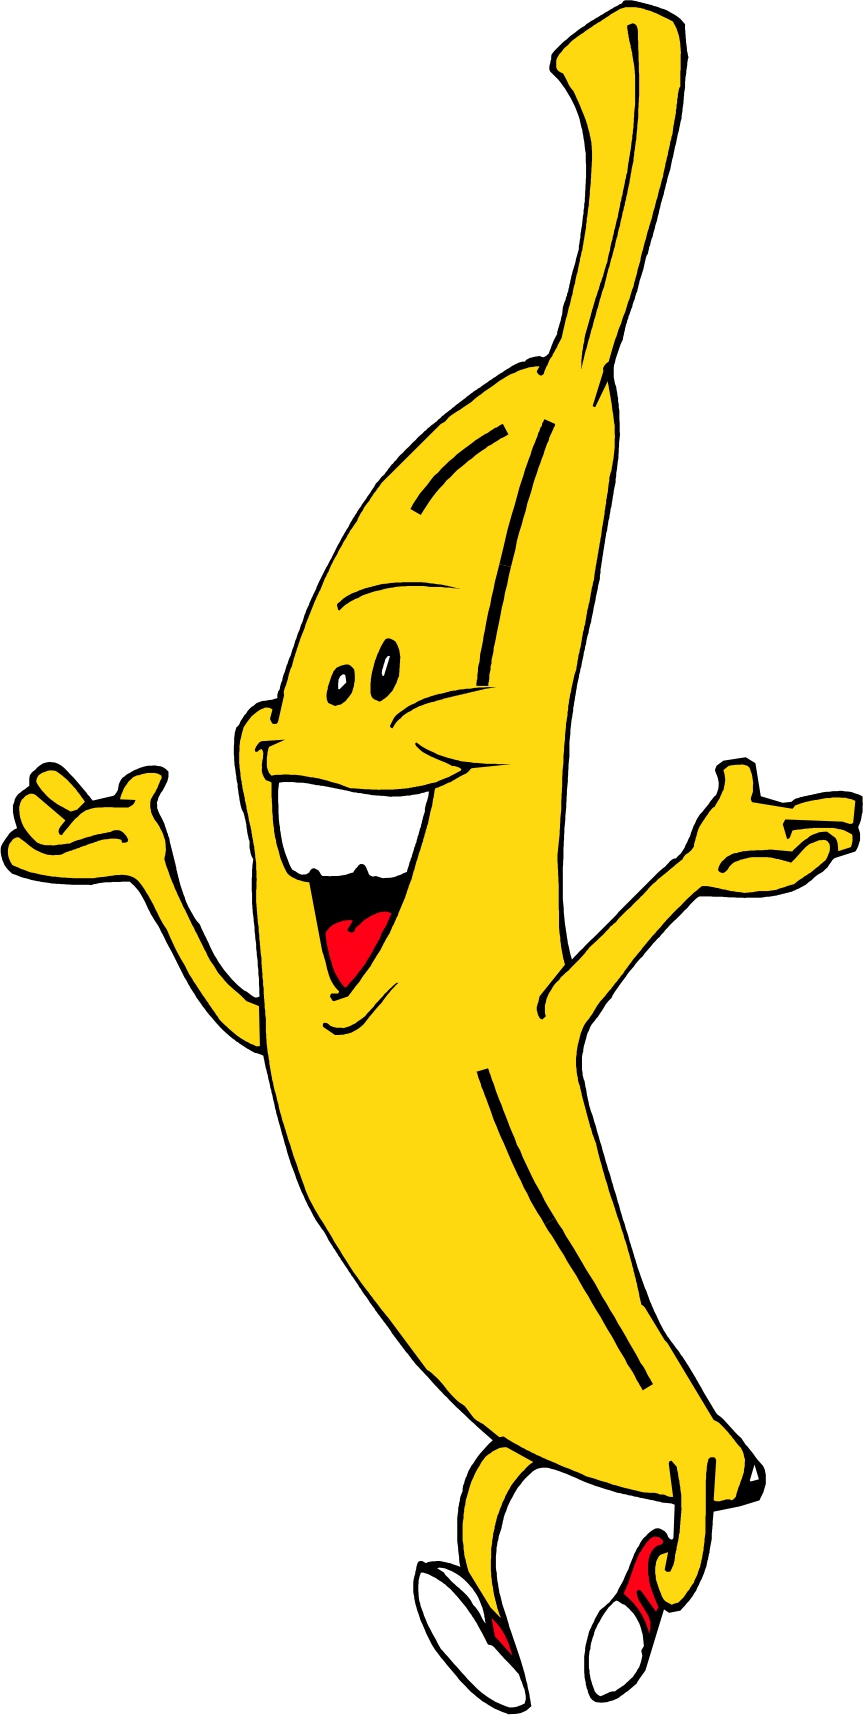 funny cartoon bananas